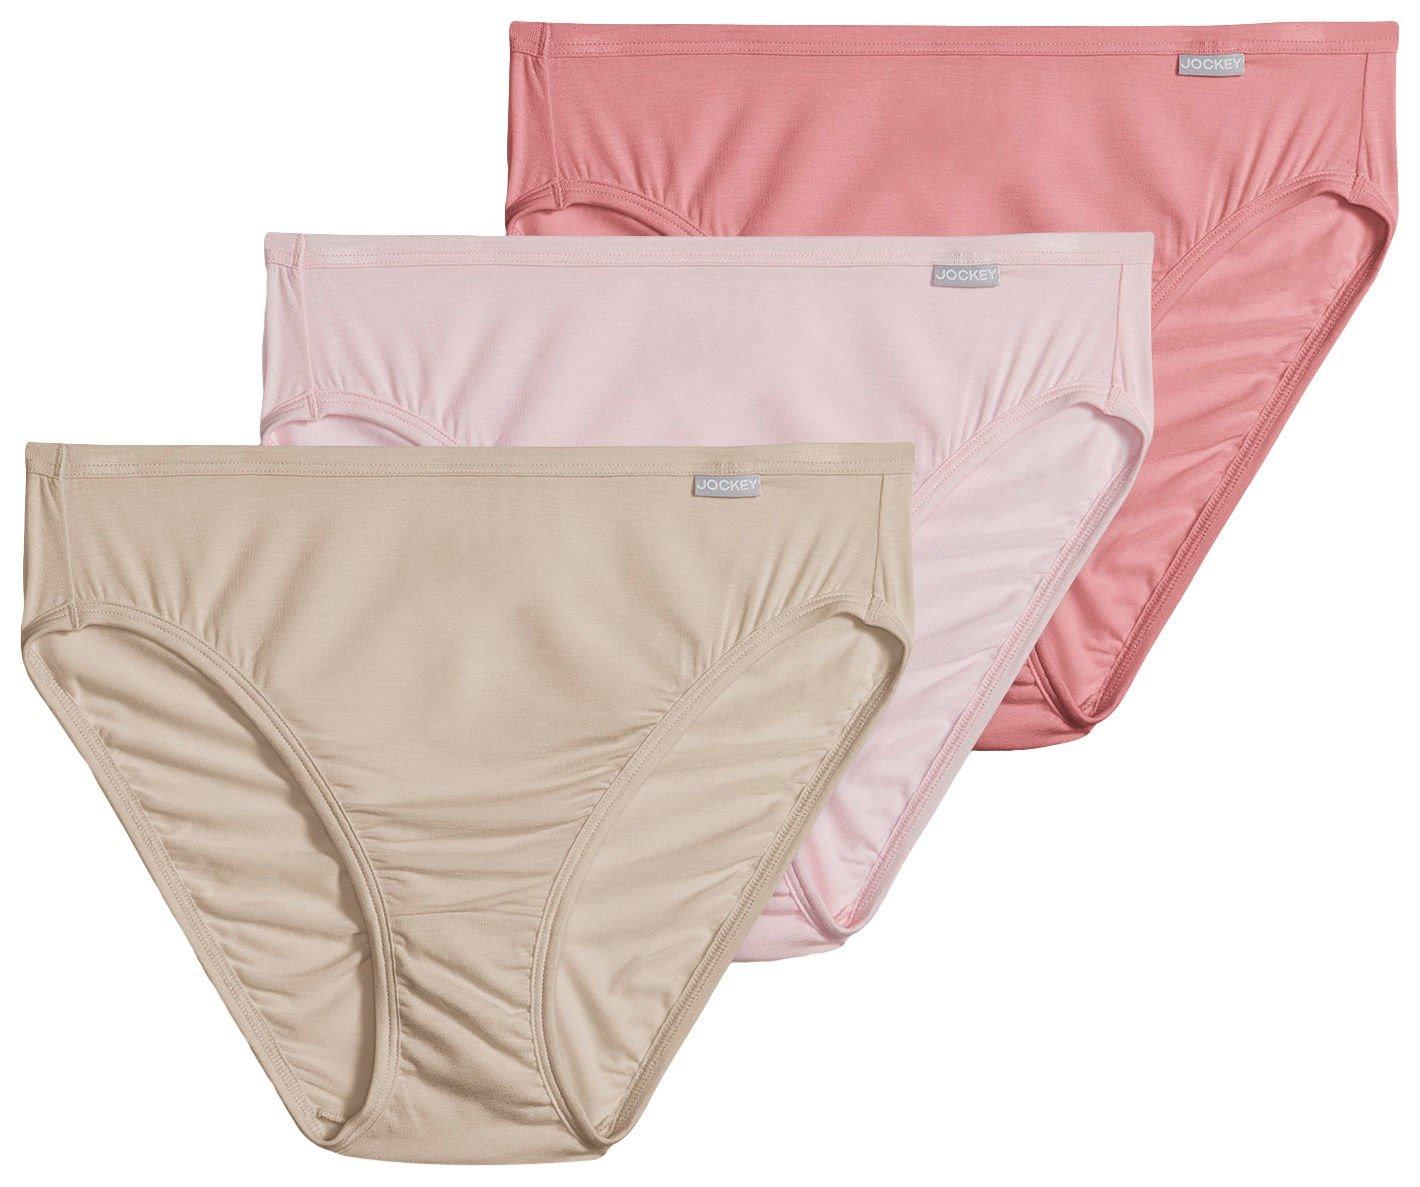 Best Deal for French Cut Underwear for Women Women Ice Silk